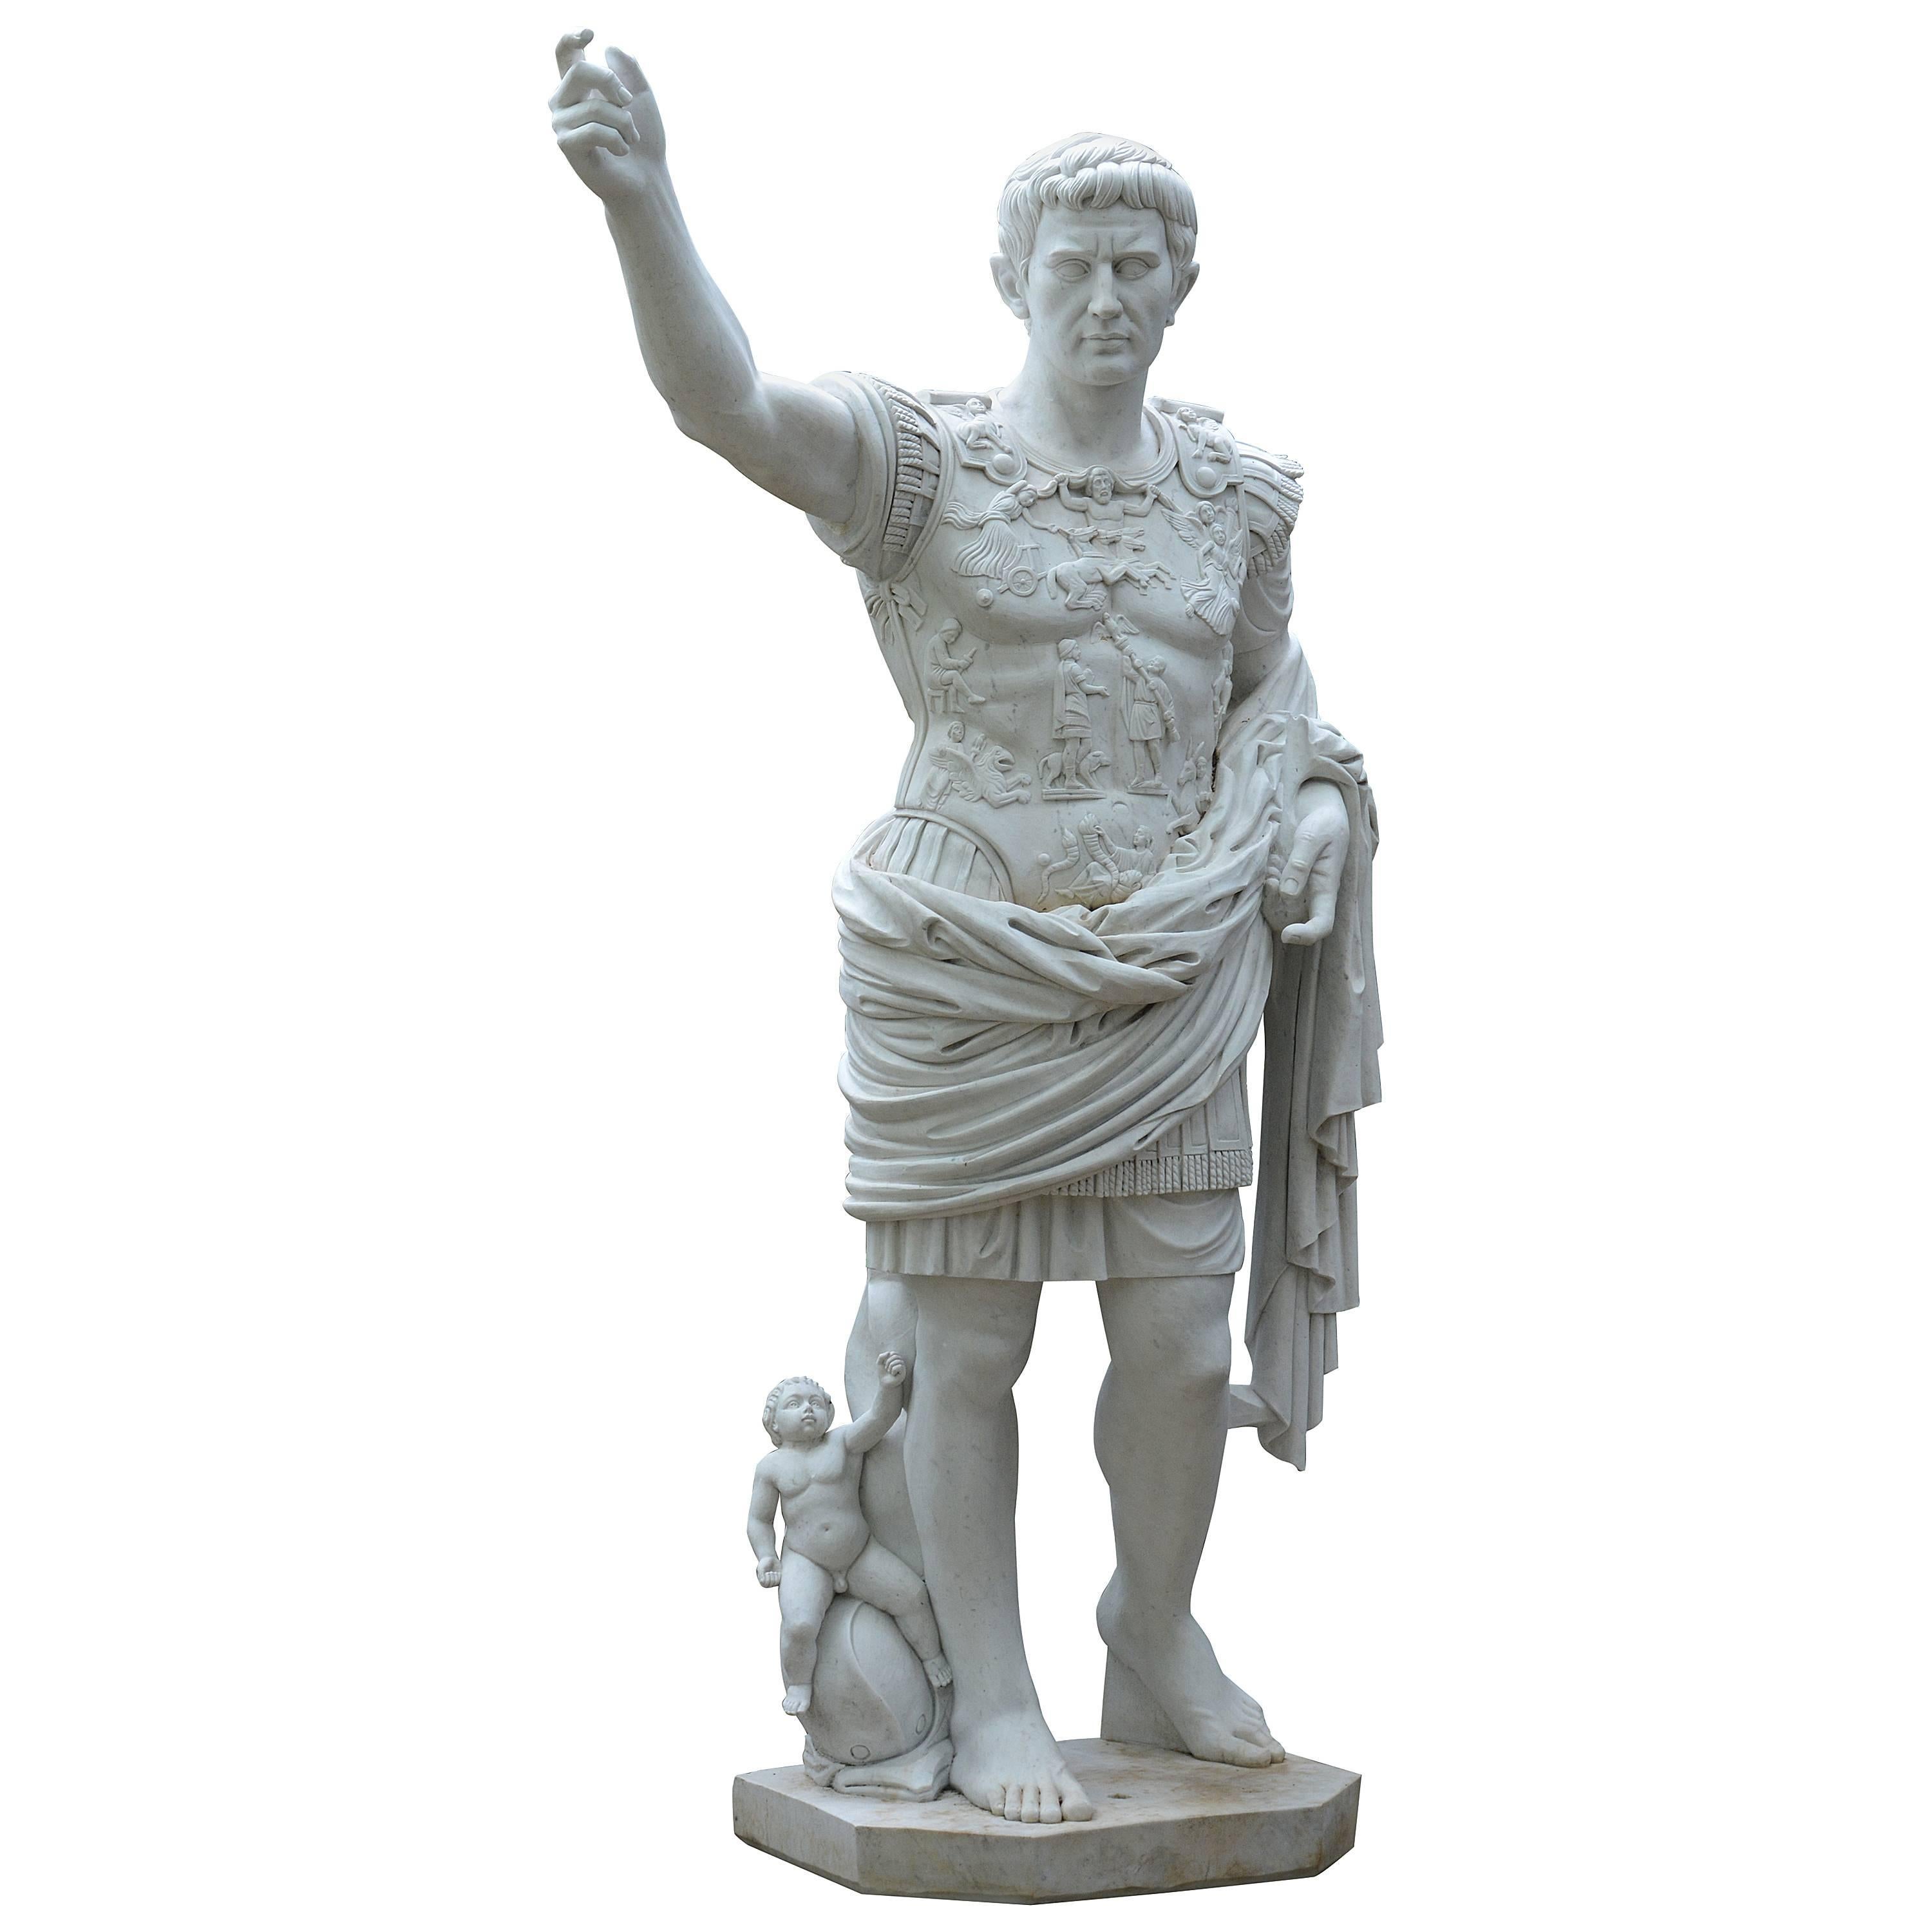 Statue of Augustus of Prima Porta